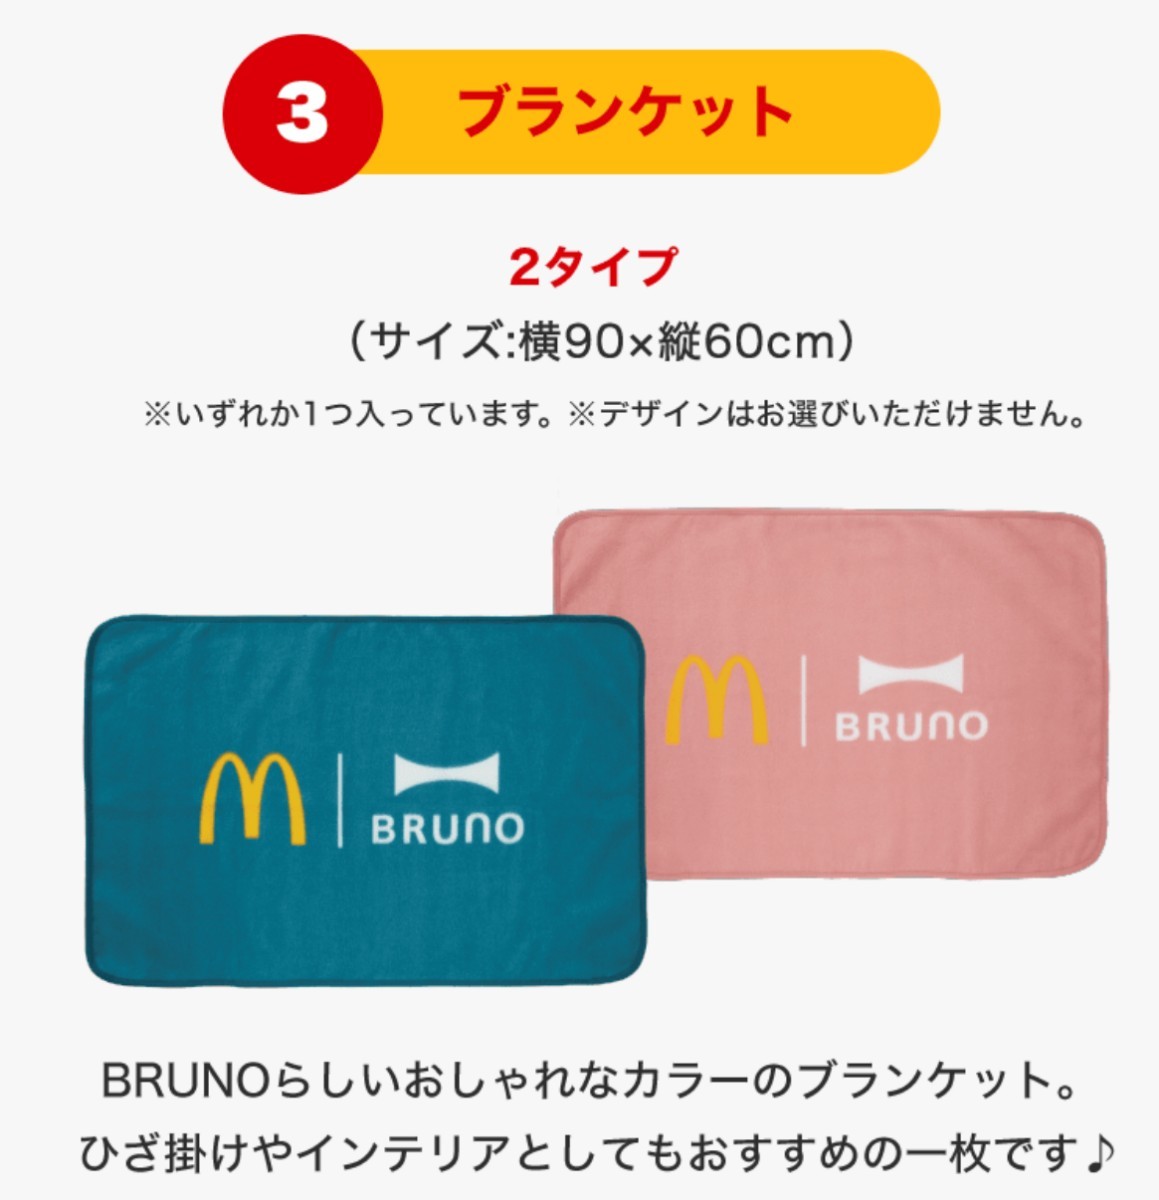 c[ McDonald's ] лотерейный мешок товары только картофель увлажнитель, монета сумка, покрывало, Mini plate 4 позиций комплект бледно-голубой 